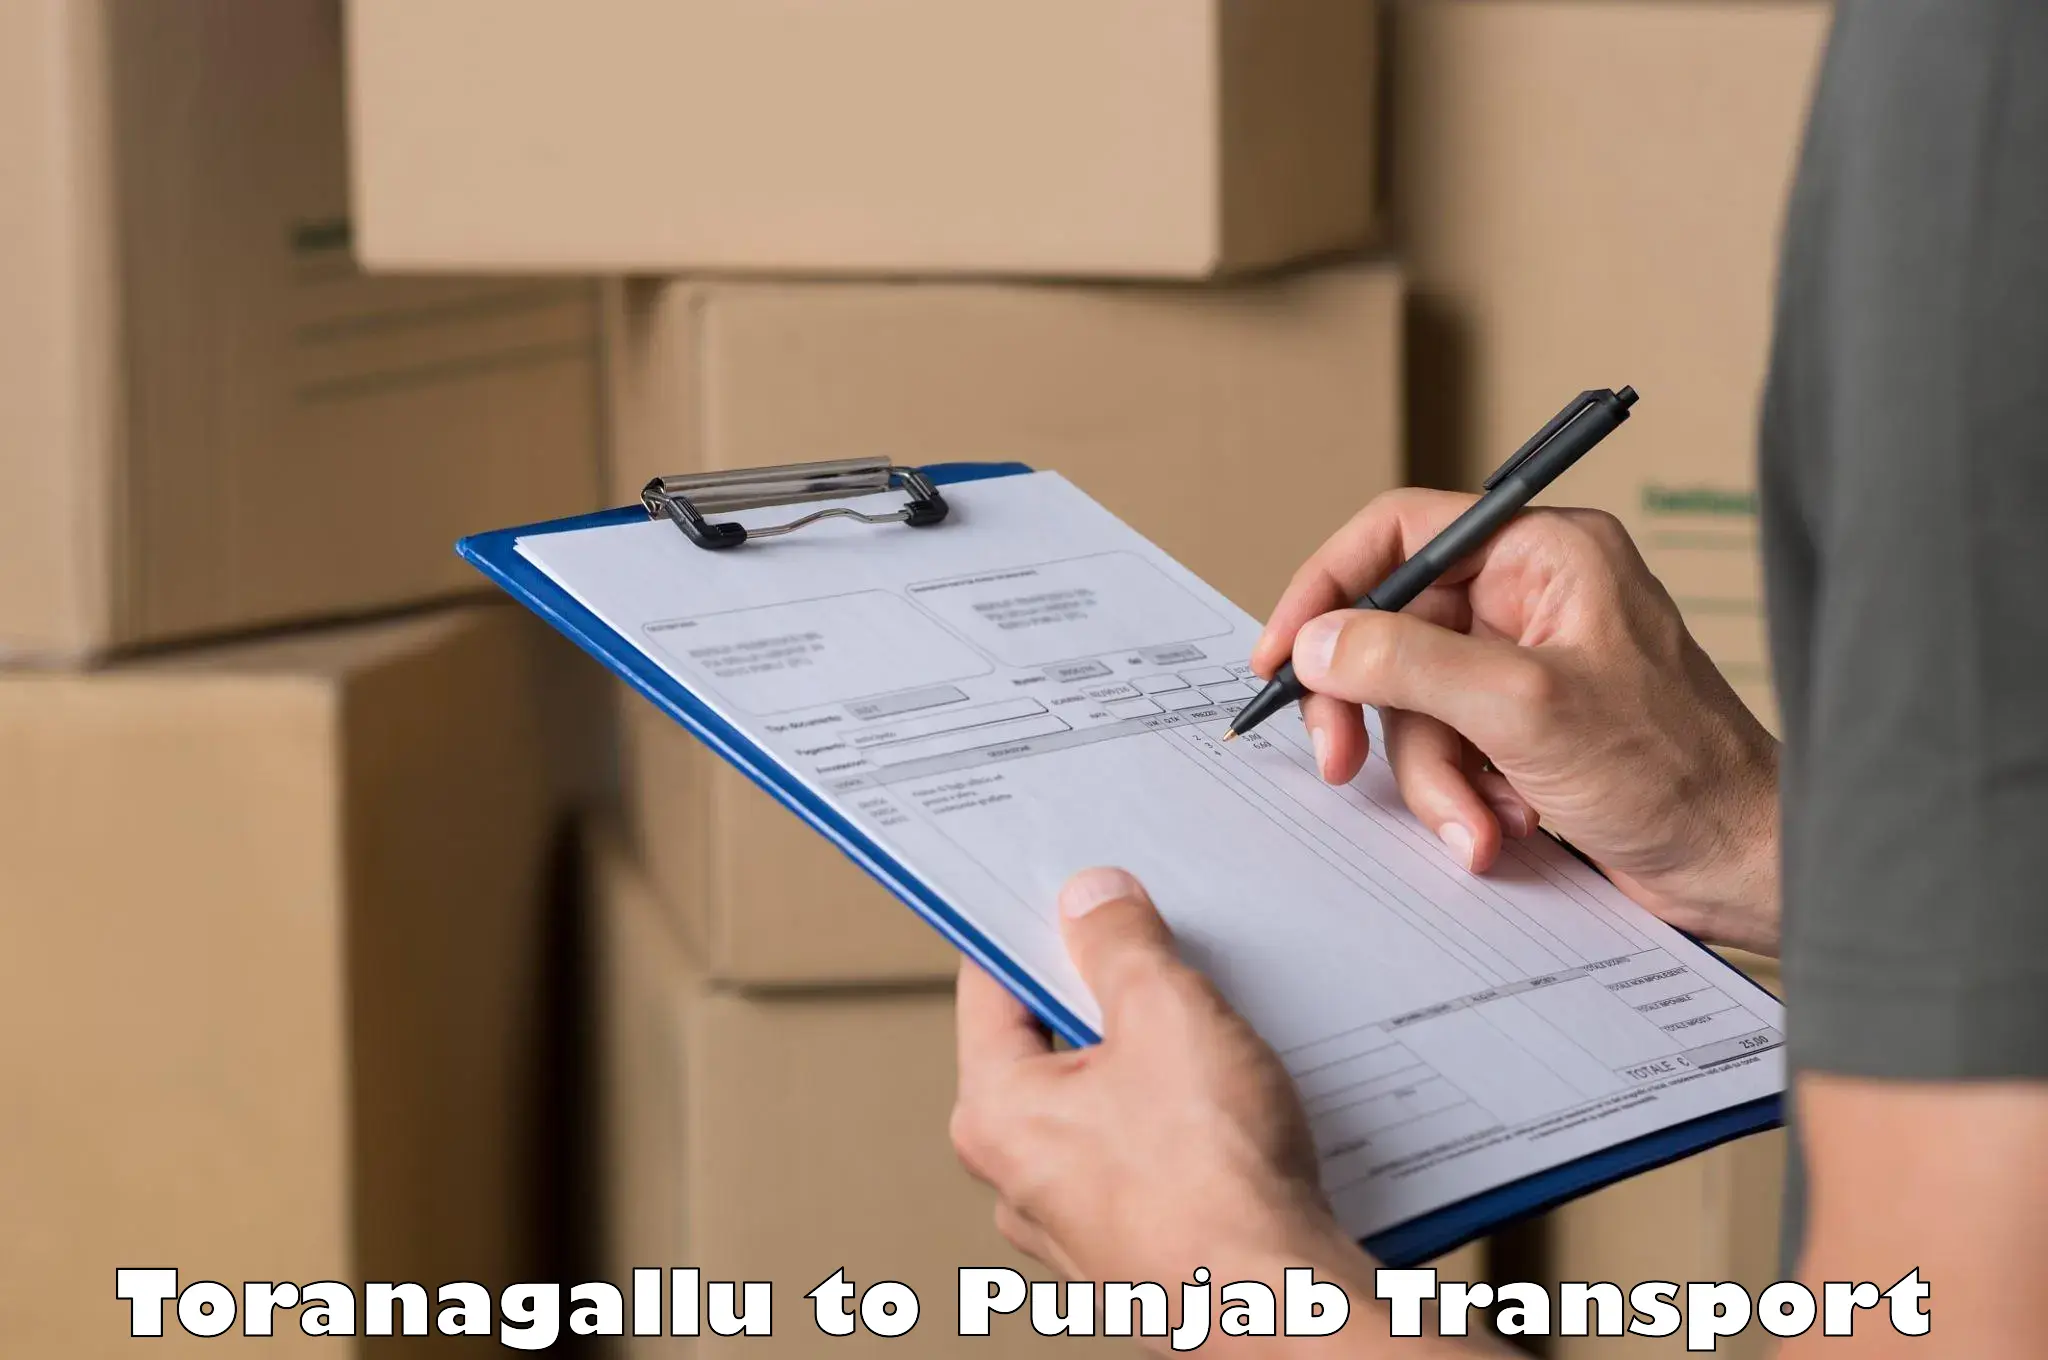 Commercial transport service Toranagallu to Patiala